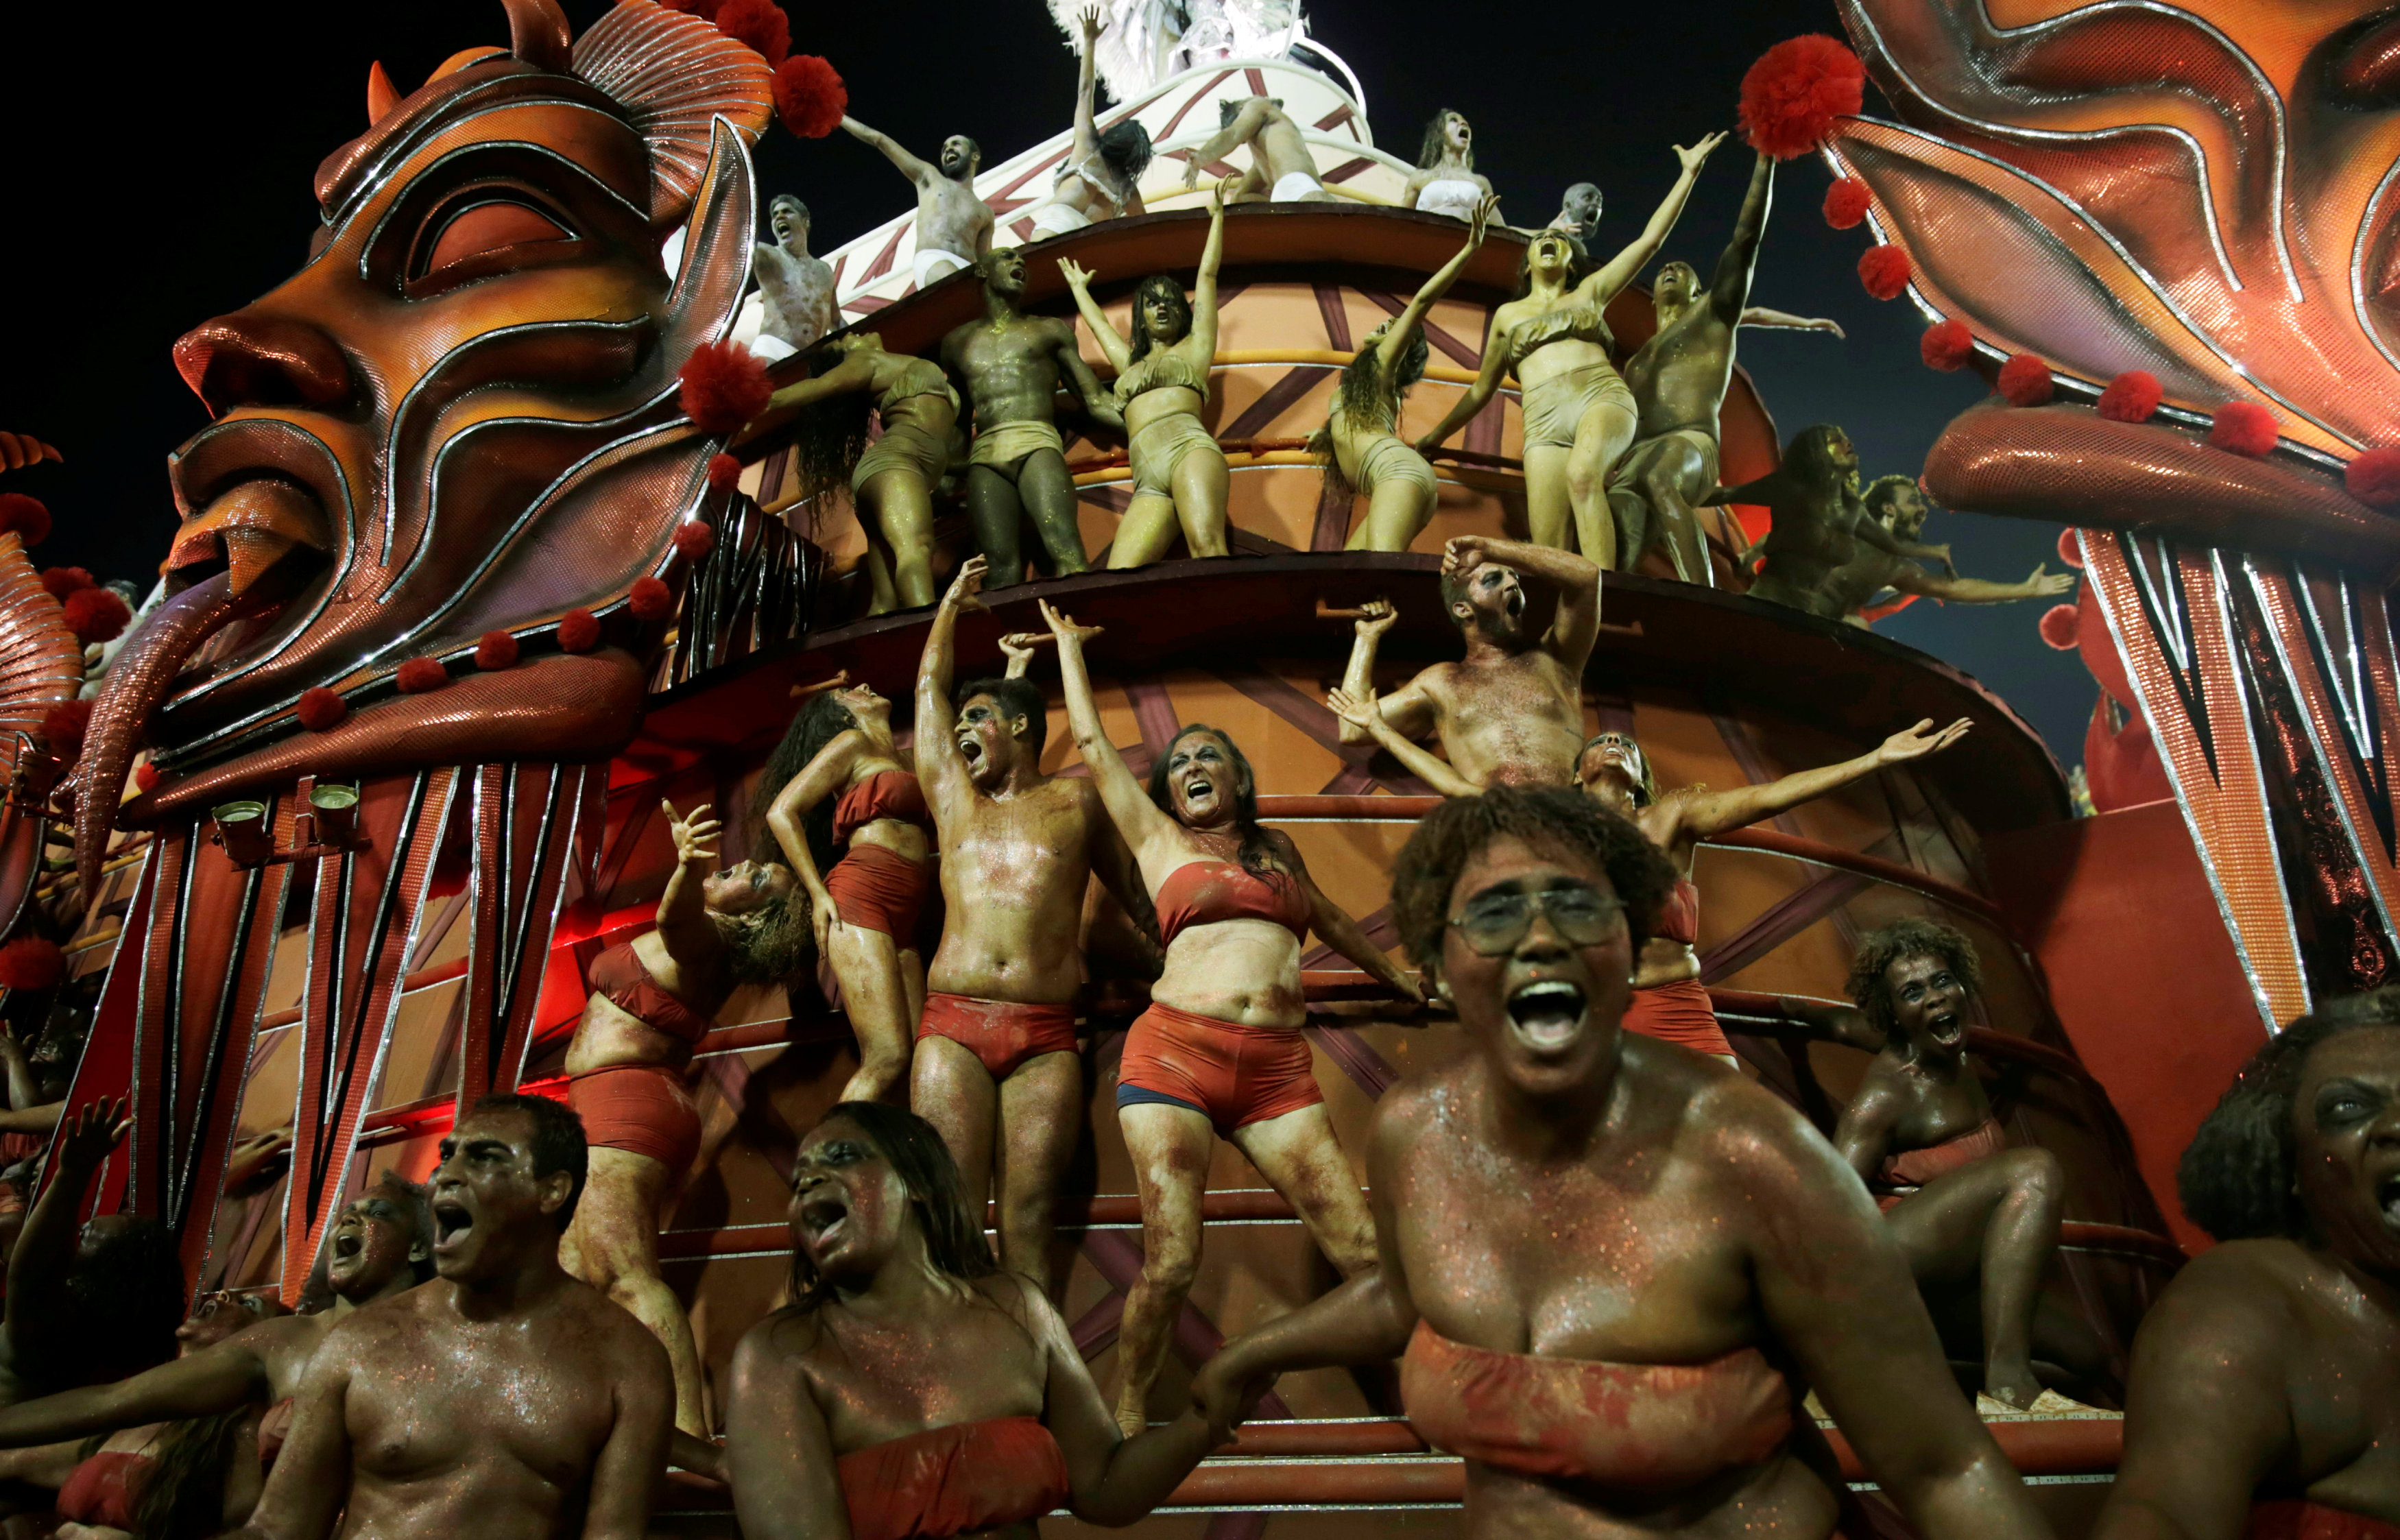 عروض فنية على التماثيل لإحياء رقصة السامبا فى البرازيل